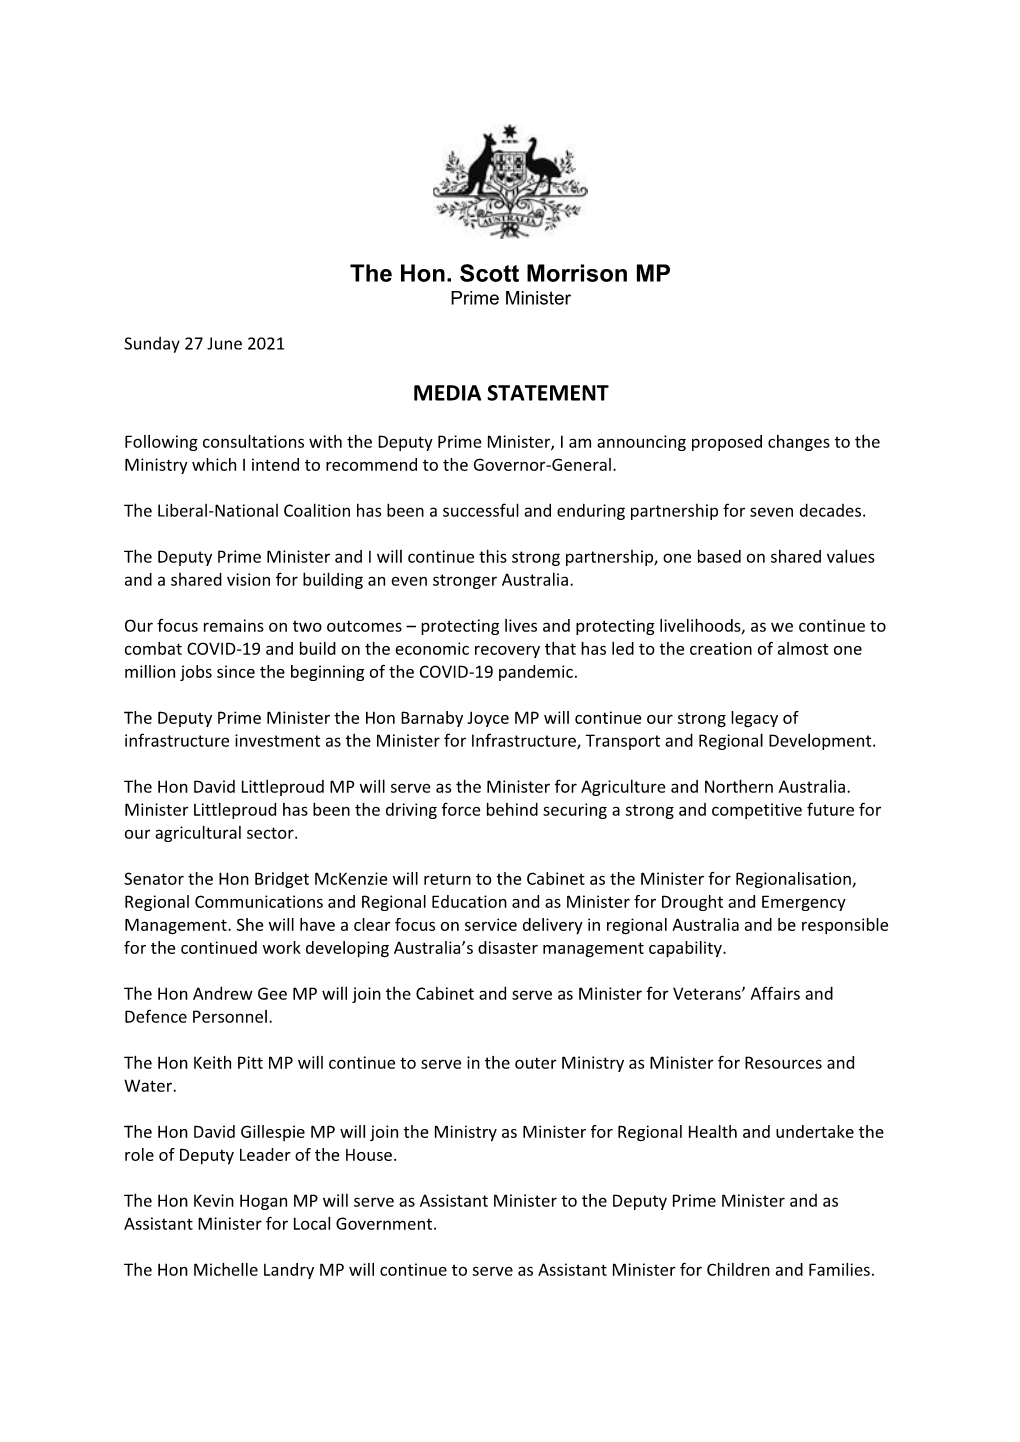 The Hon. Scott Morrison MP MEDIA STATEMENT